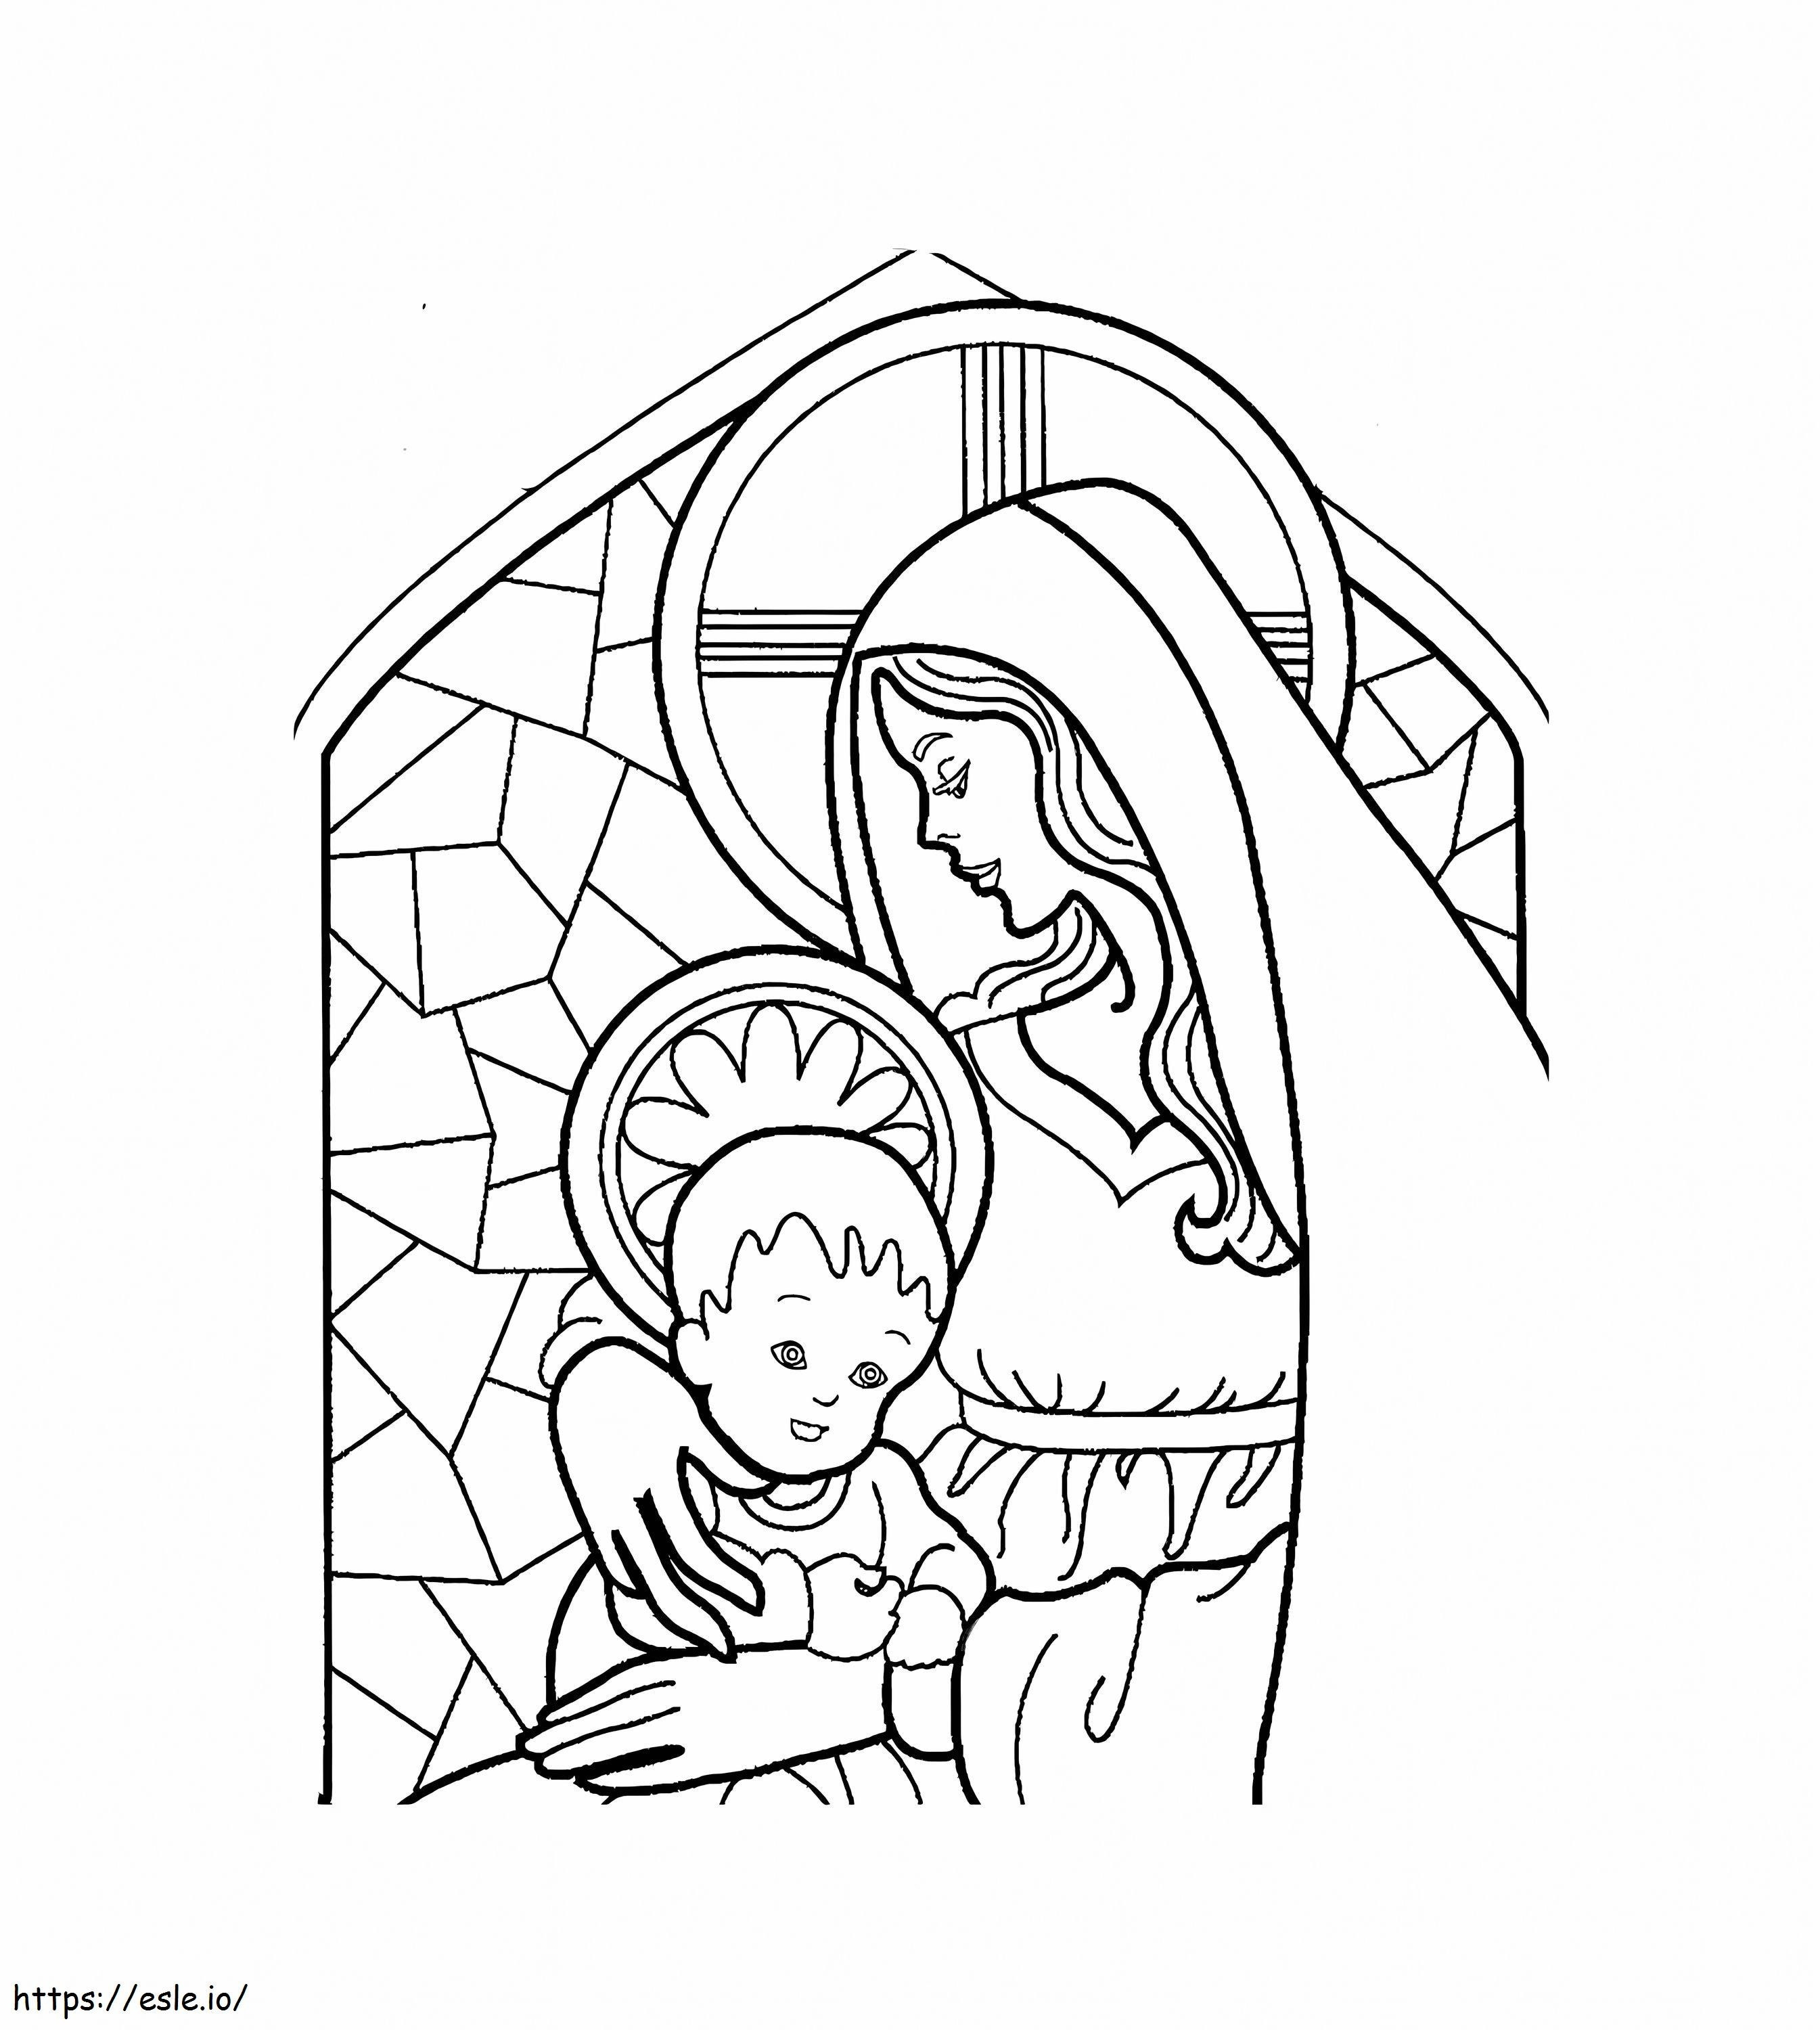 Wydrukuj schemat Matki Jezusa do kolorowania kolorowanka